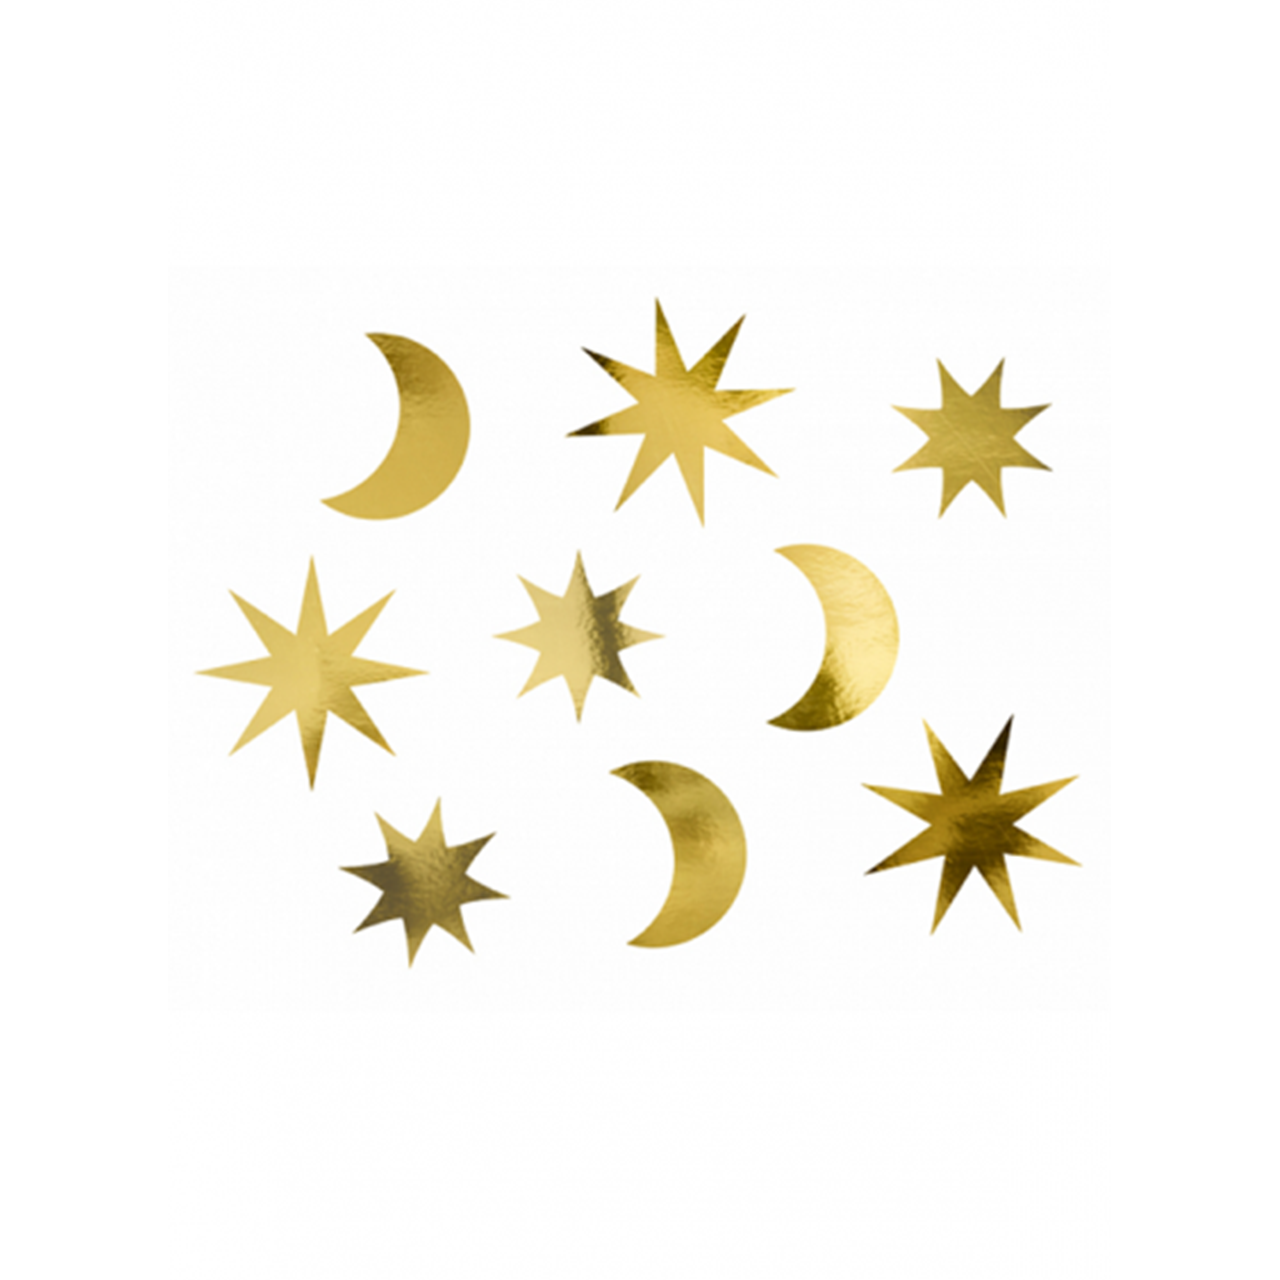 1 Tischdeko - 9er Set - Mond Sterne Celebrate 6-8cm